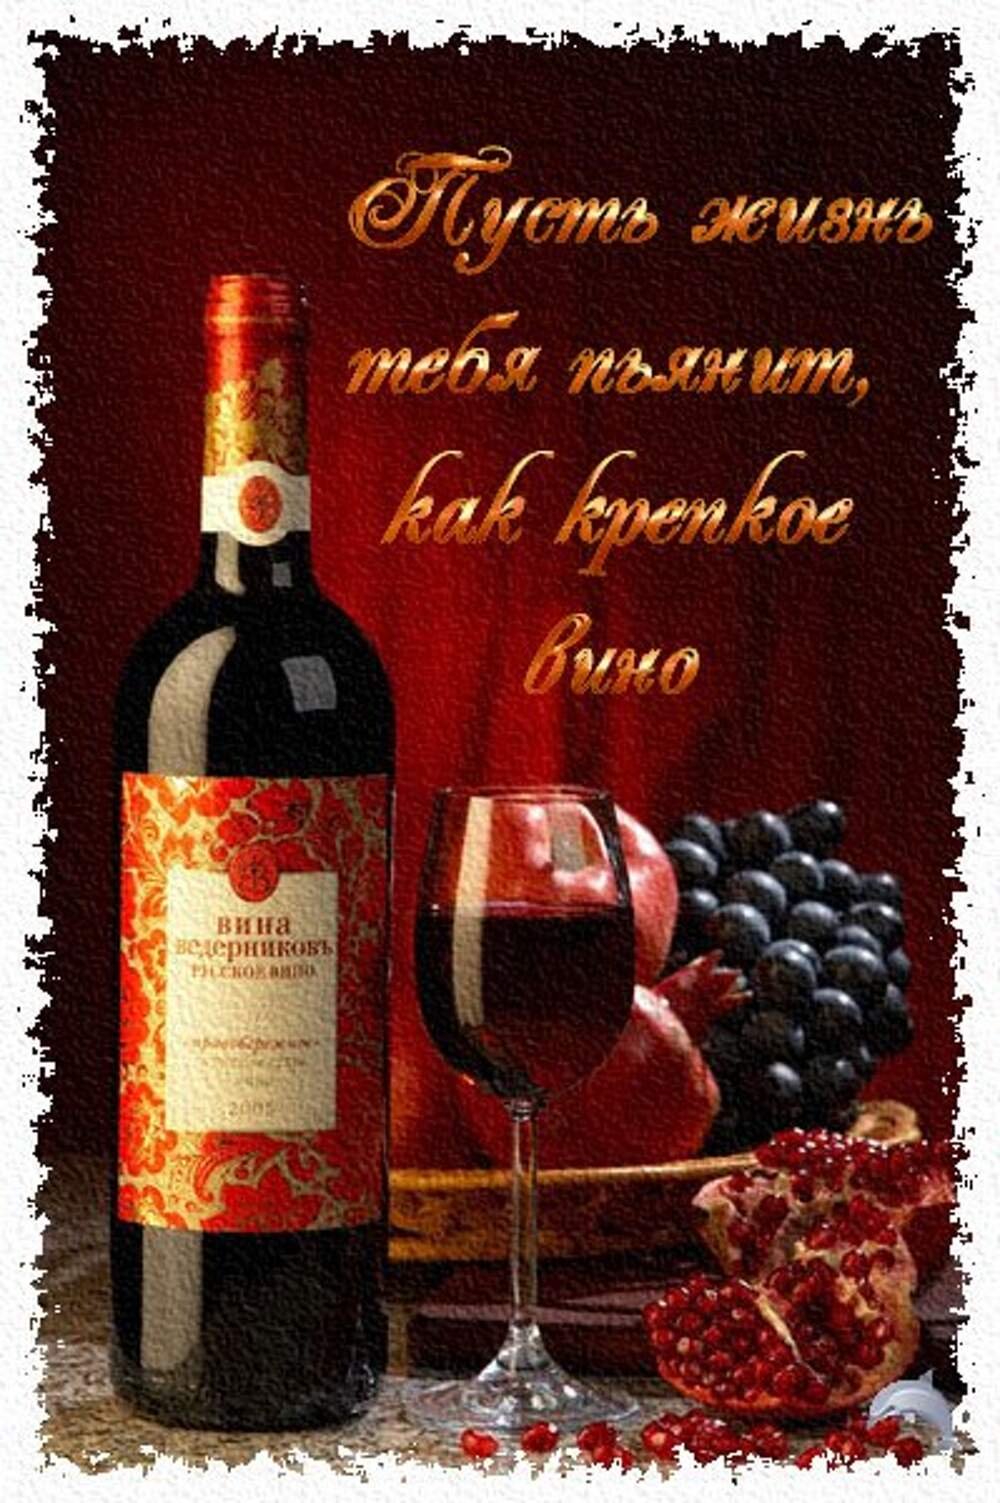 Поздравления с днем рождения на армянском языке. С днём рождения мужчине. С днем рождения вино. С днем рождения открытка с вином. Открытки с днём рождения мужчине.